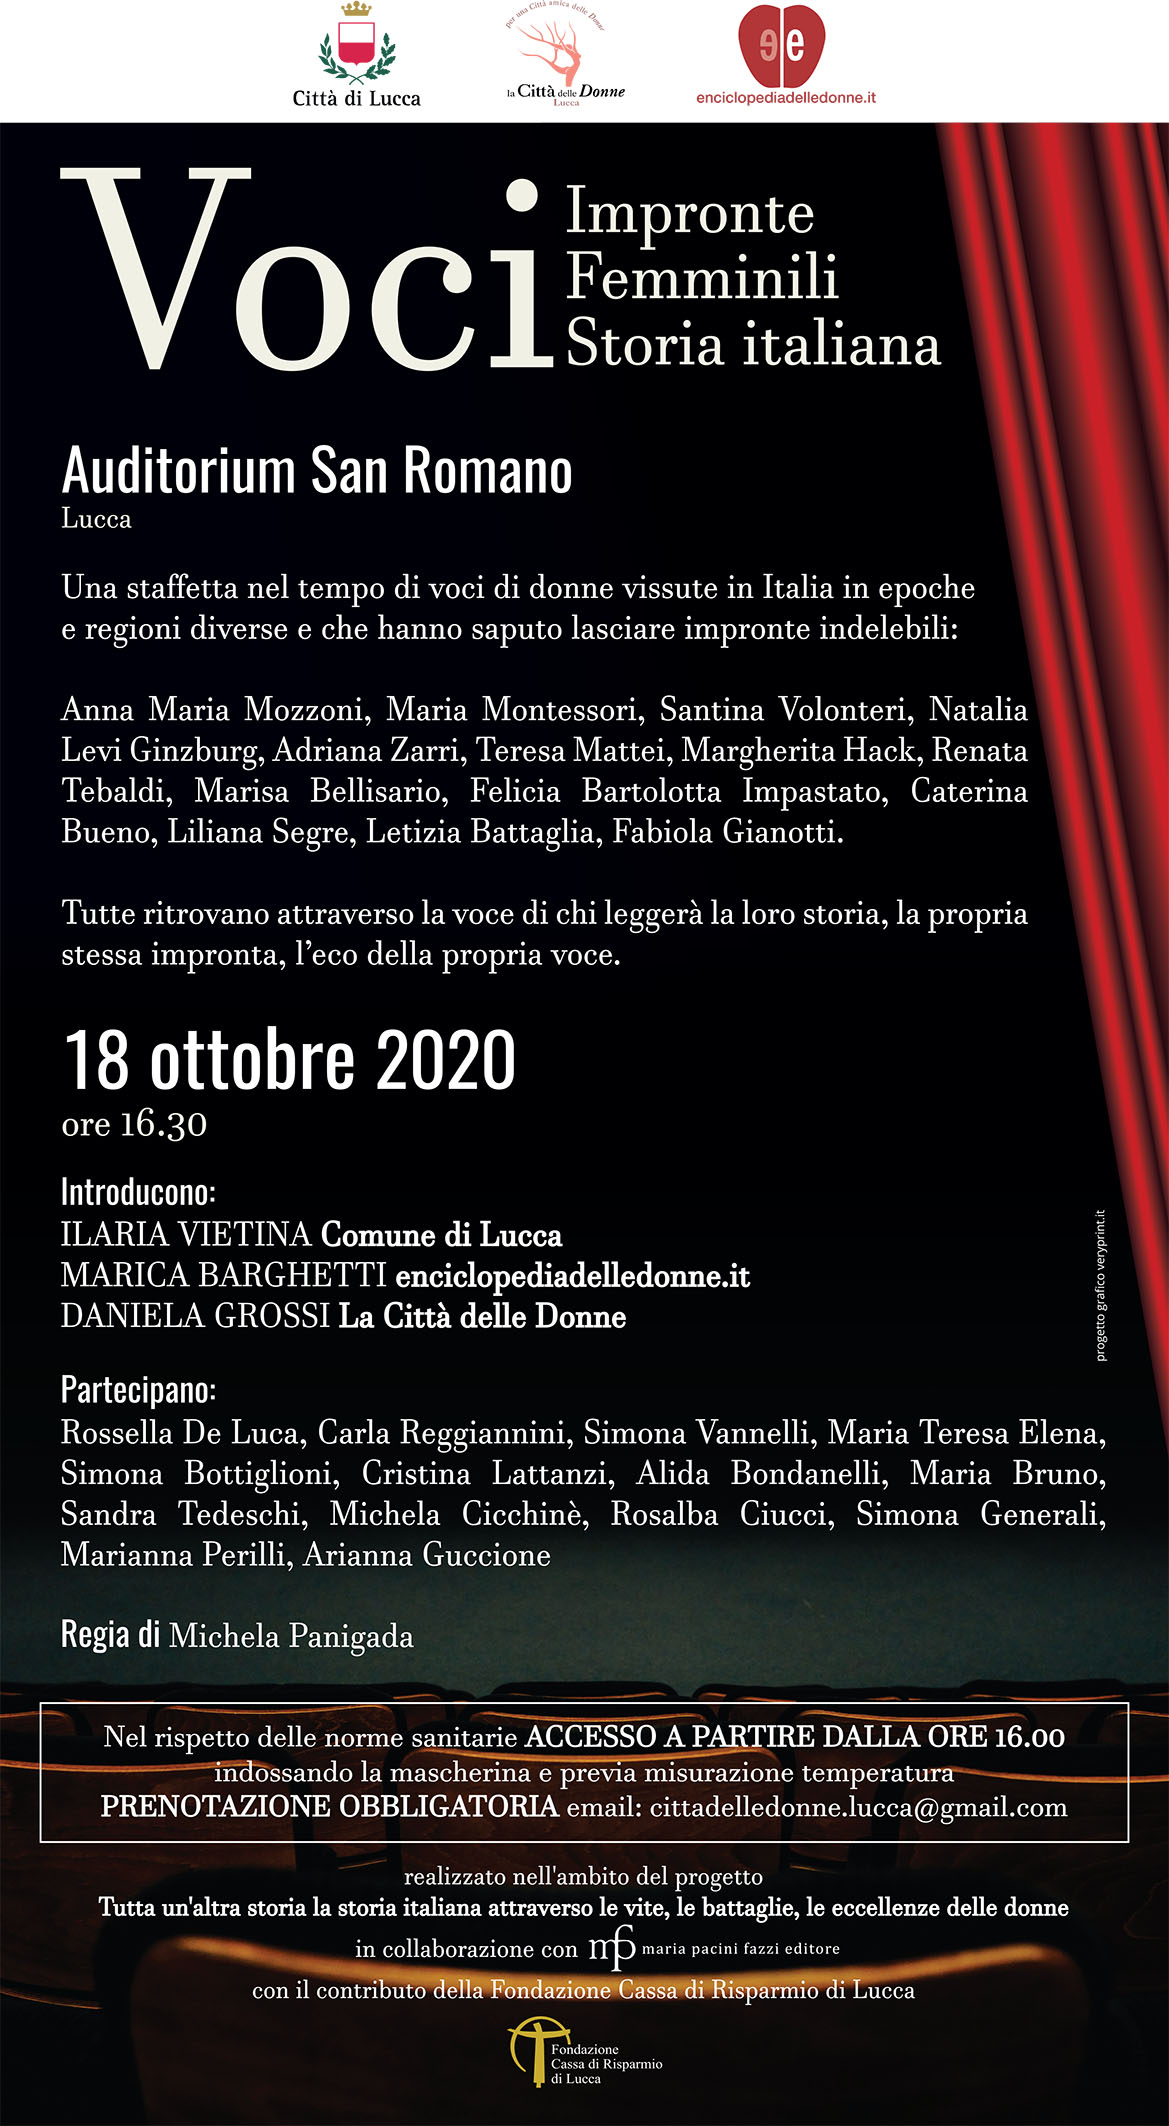 Impronte femminili nella storia italiana, l’evento all’ Auditorium San Romano di Lucca